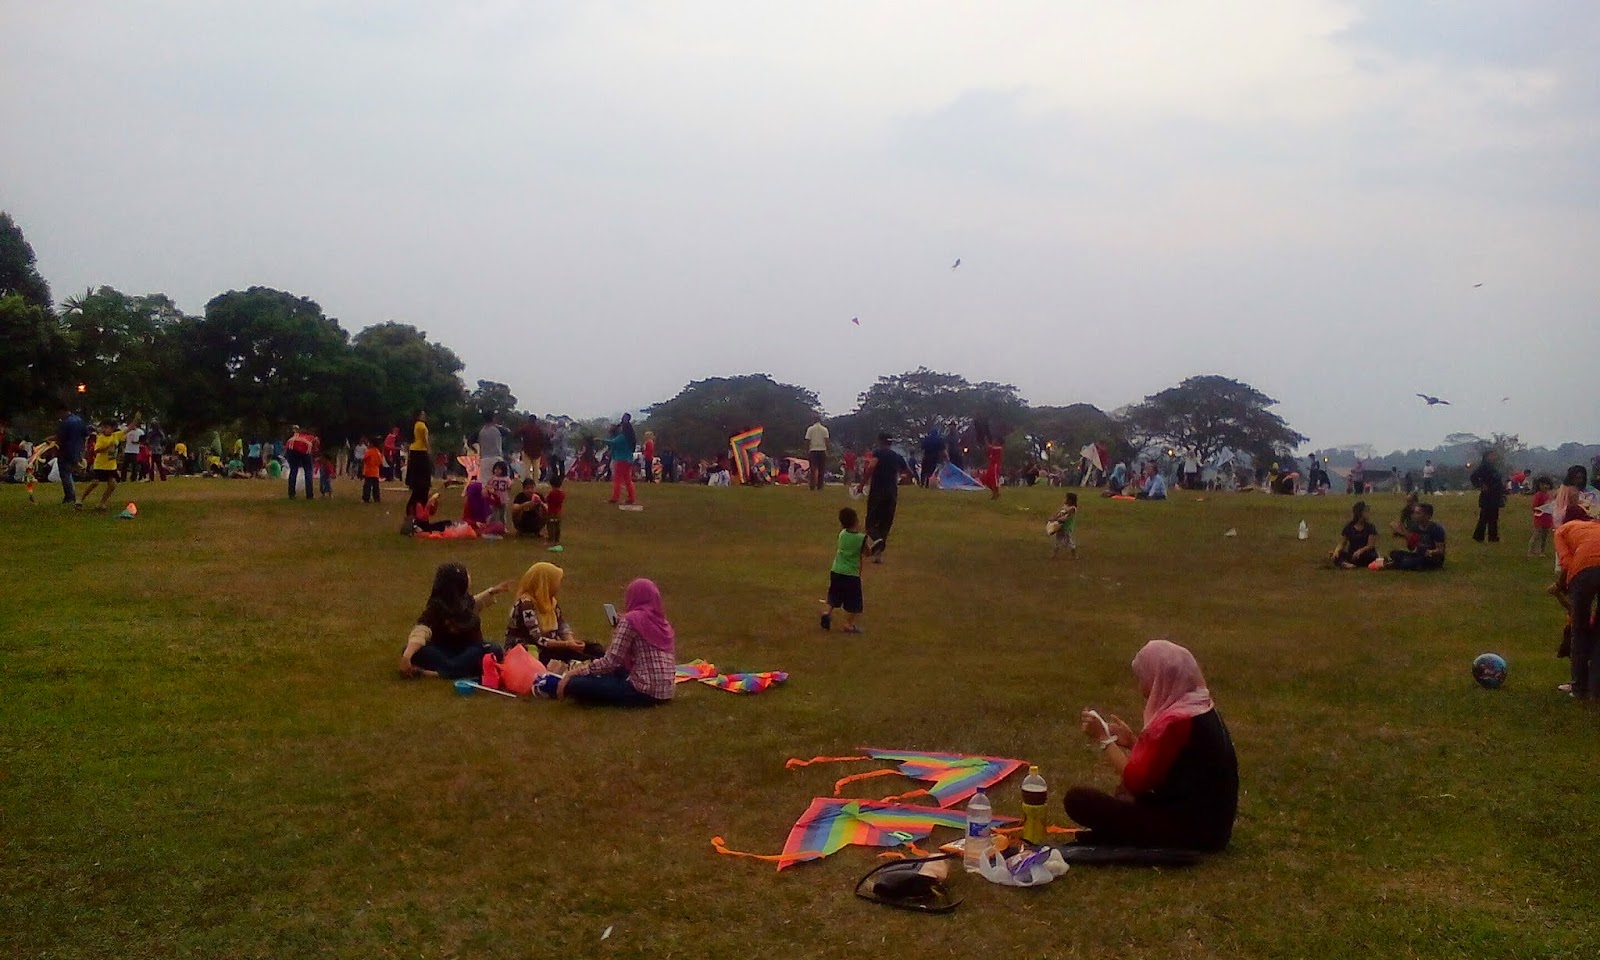 CiNtA HaTi Ku: jom kite ke taman layang layang, selayang